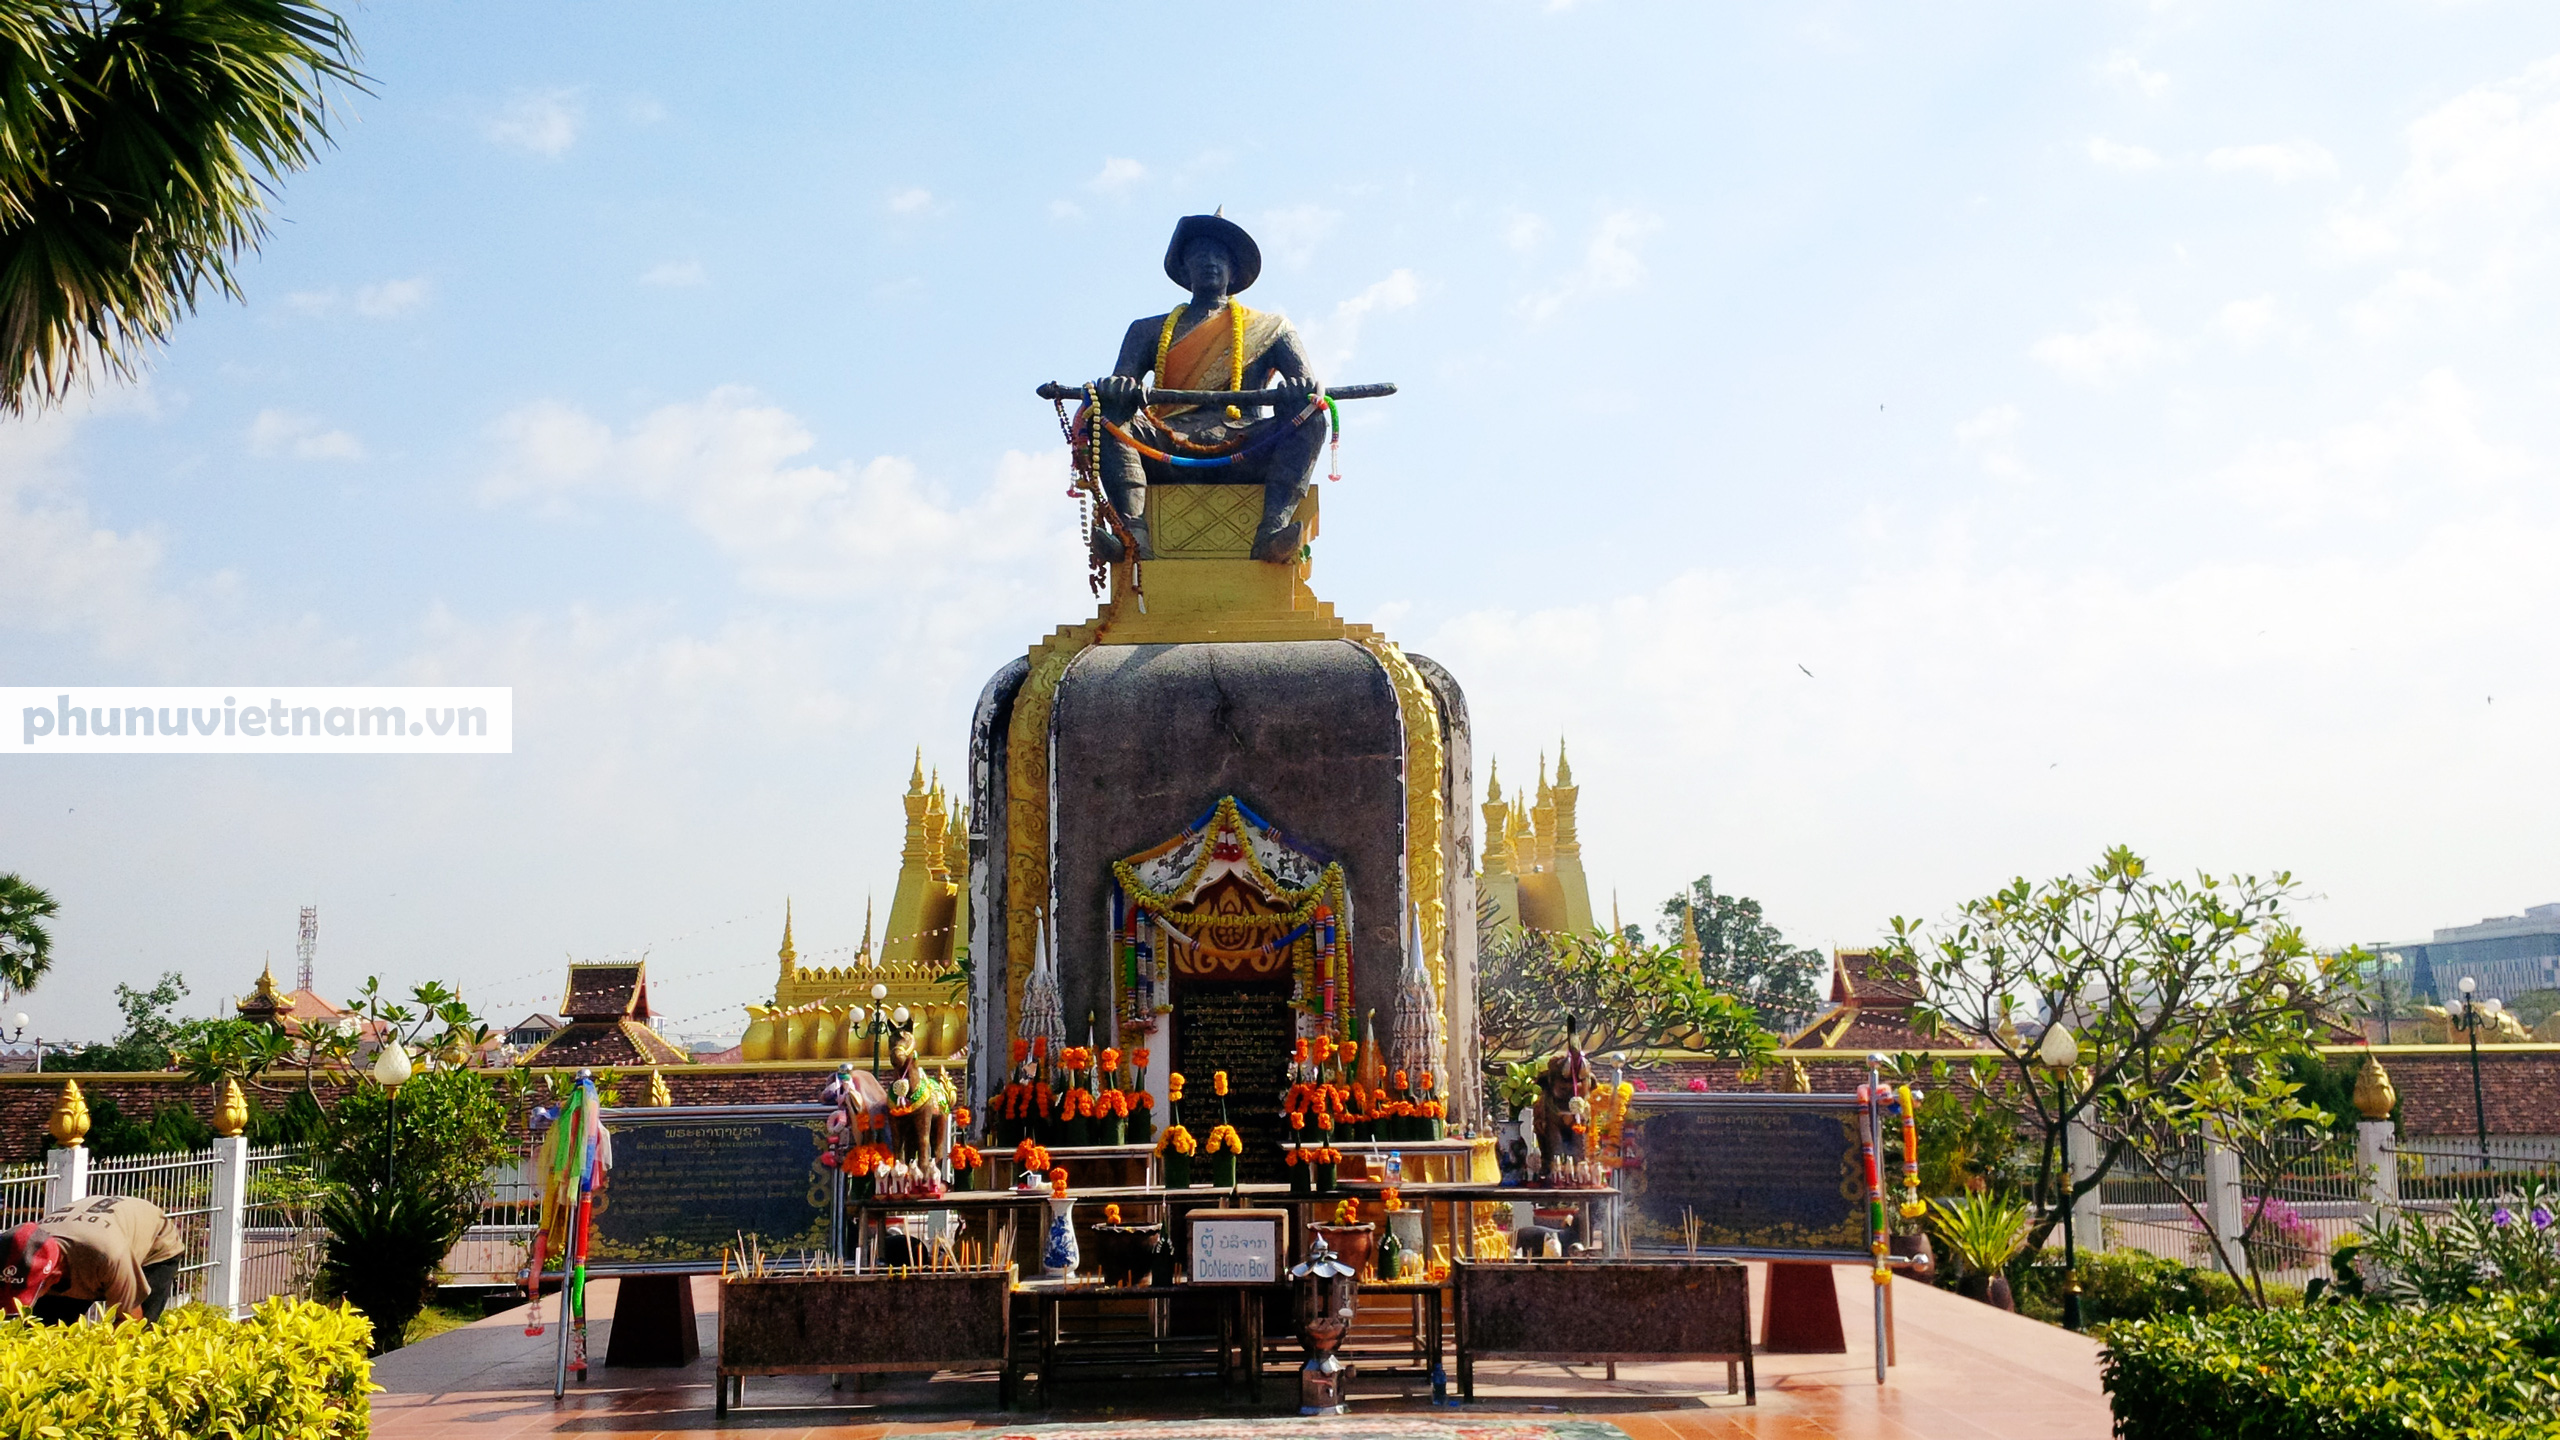 Chiêm ngưỡng ngôi tháp vàng lớn nhất của Lào, gần 500 tuổi tráng lệ giữa đất trời - Ảnh 3.